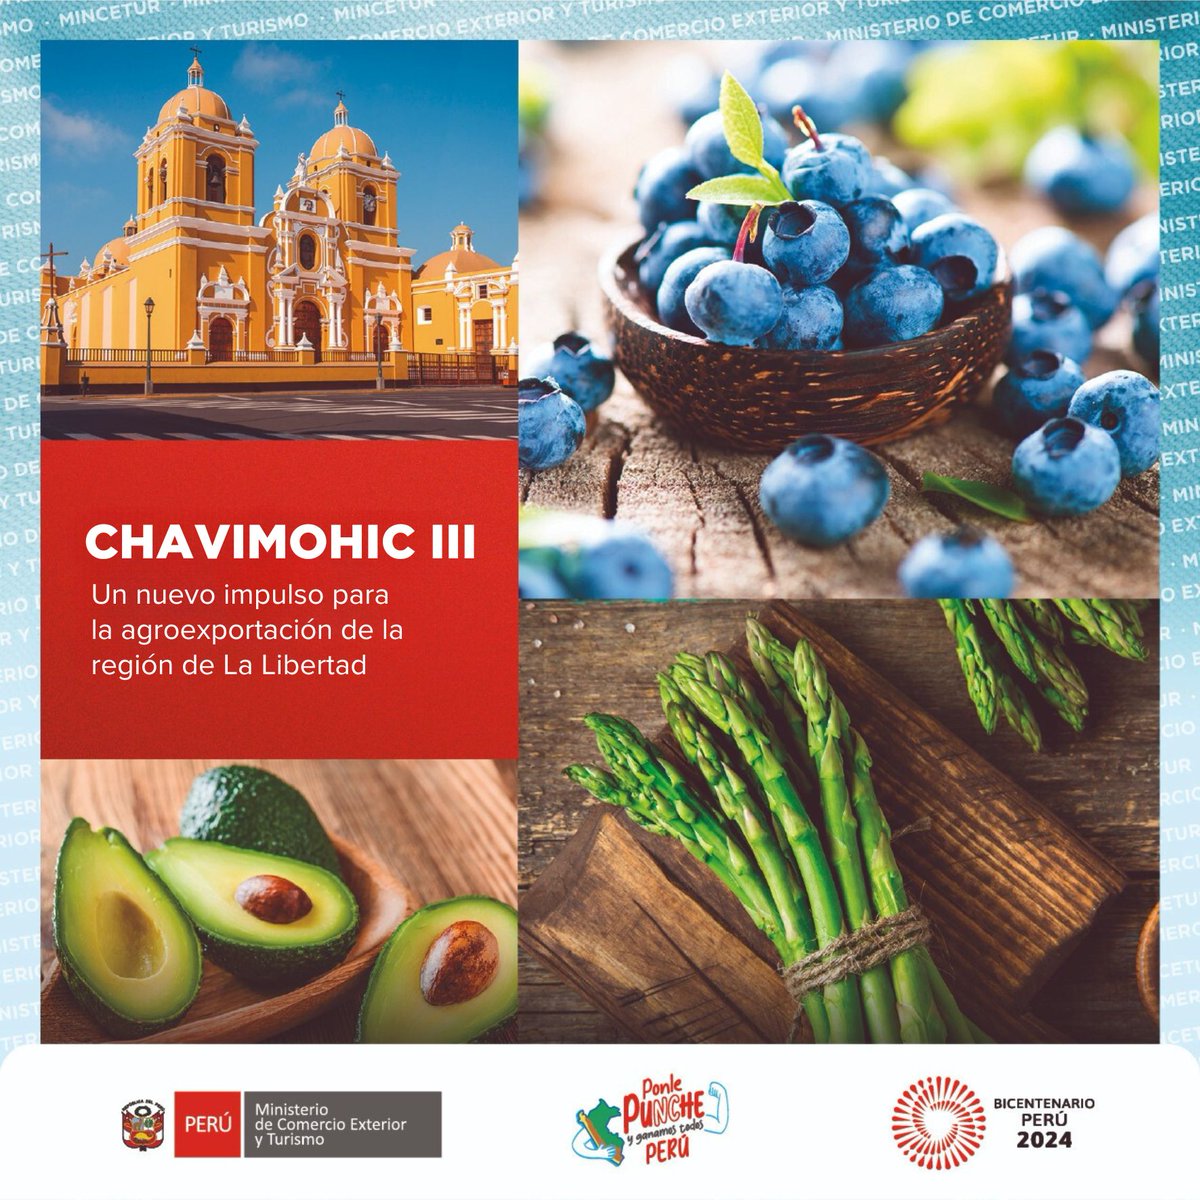 ¡Impulso para las exportaciones peruanas! 🚢🌎
Con el Proyecto Especial Chavimochic III se impulsará el desarrollo y aumentarán los volúmenes de exportación agropecuaria en el norte del país, especialmente en la región #LaLibertad. 💪🇵🇪 #DePerúParaElMundo #ProductoPeruano

Conoce…